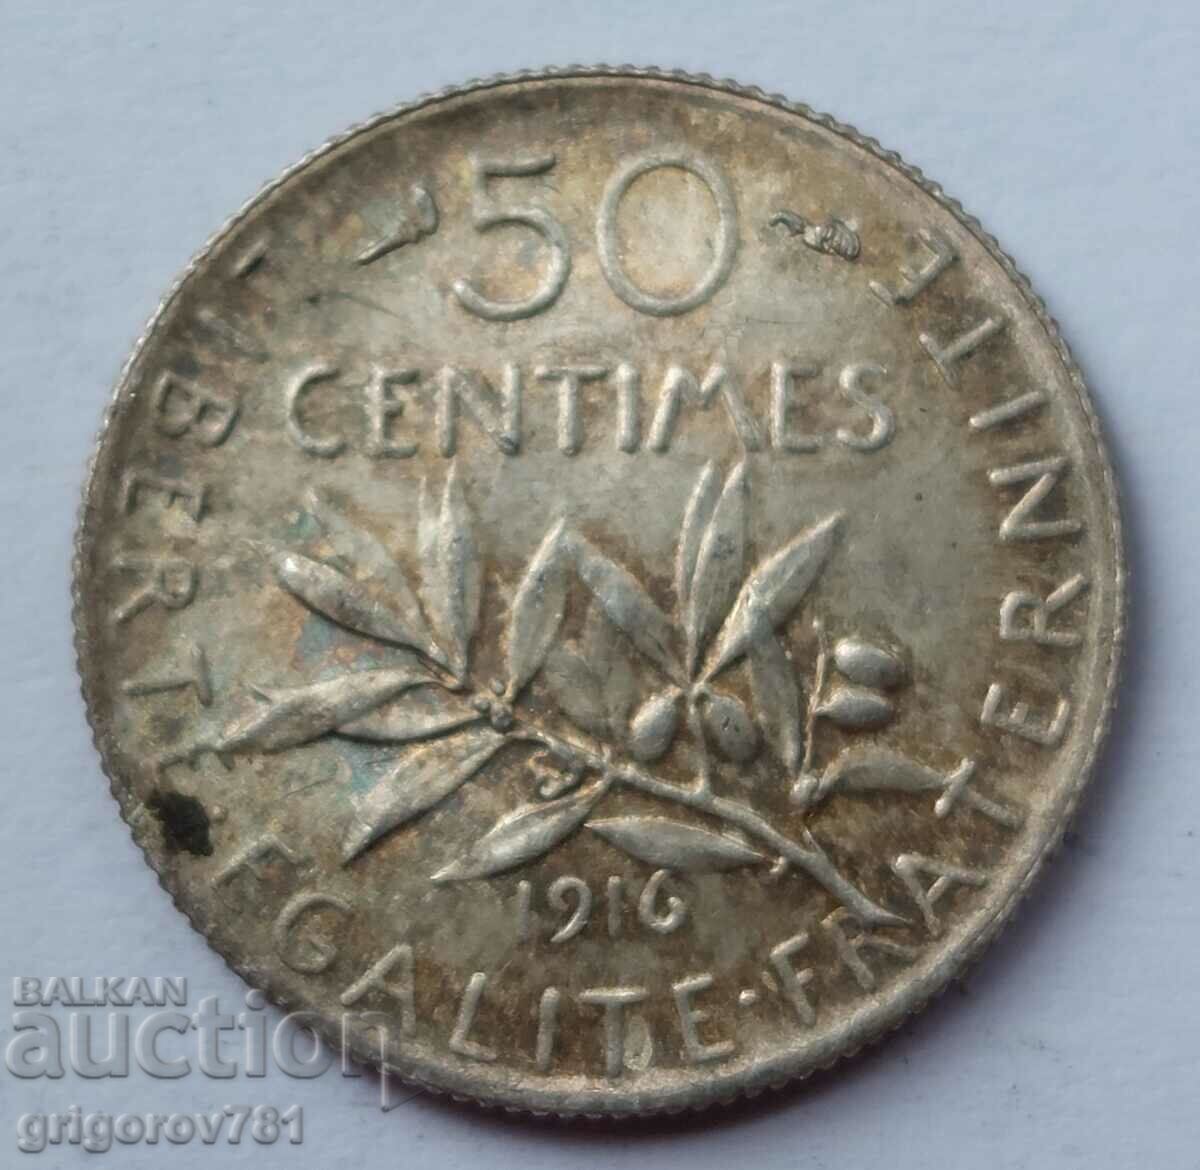 Ασημένιο 50 εκατοστά Γαλλία 1916 - ασημένιο νόμισμα №54